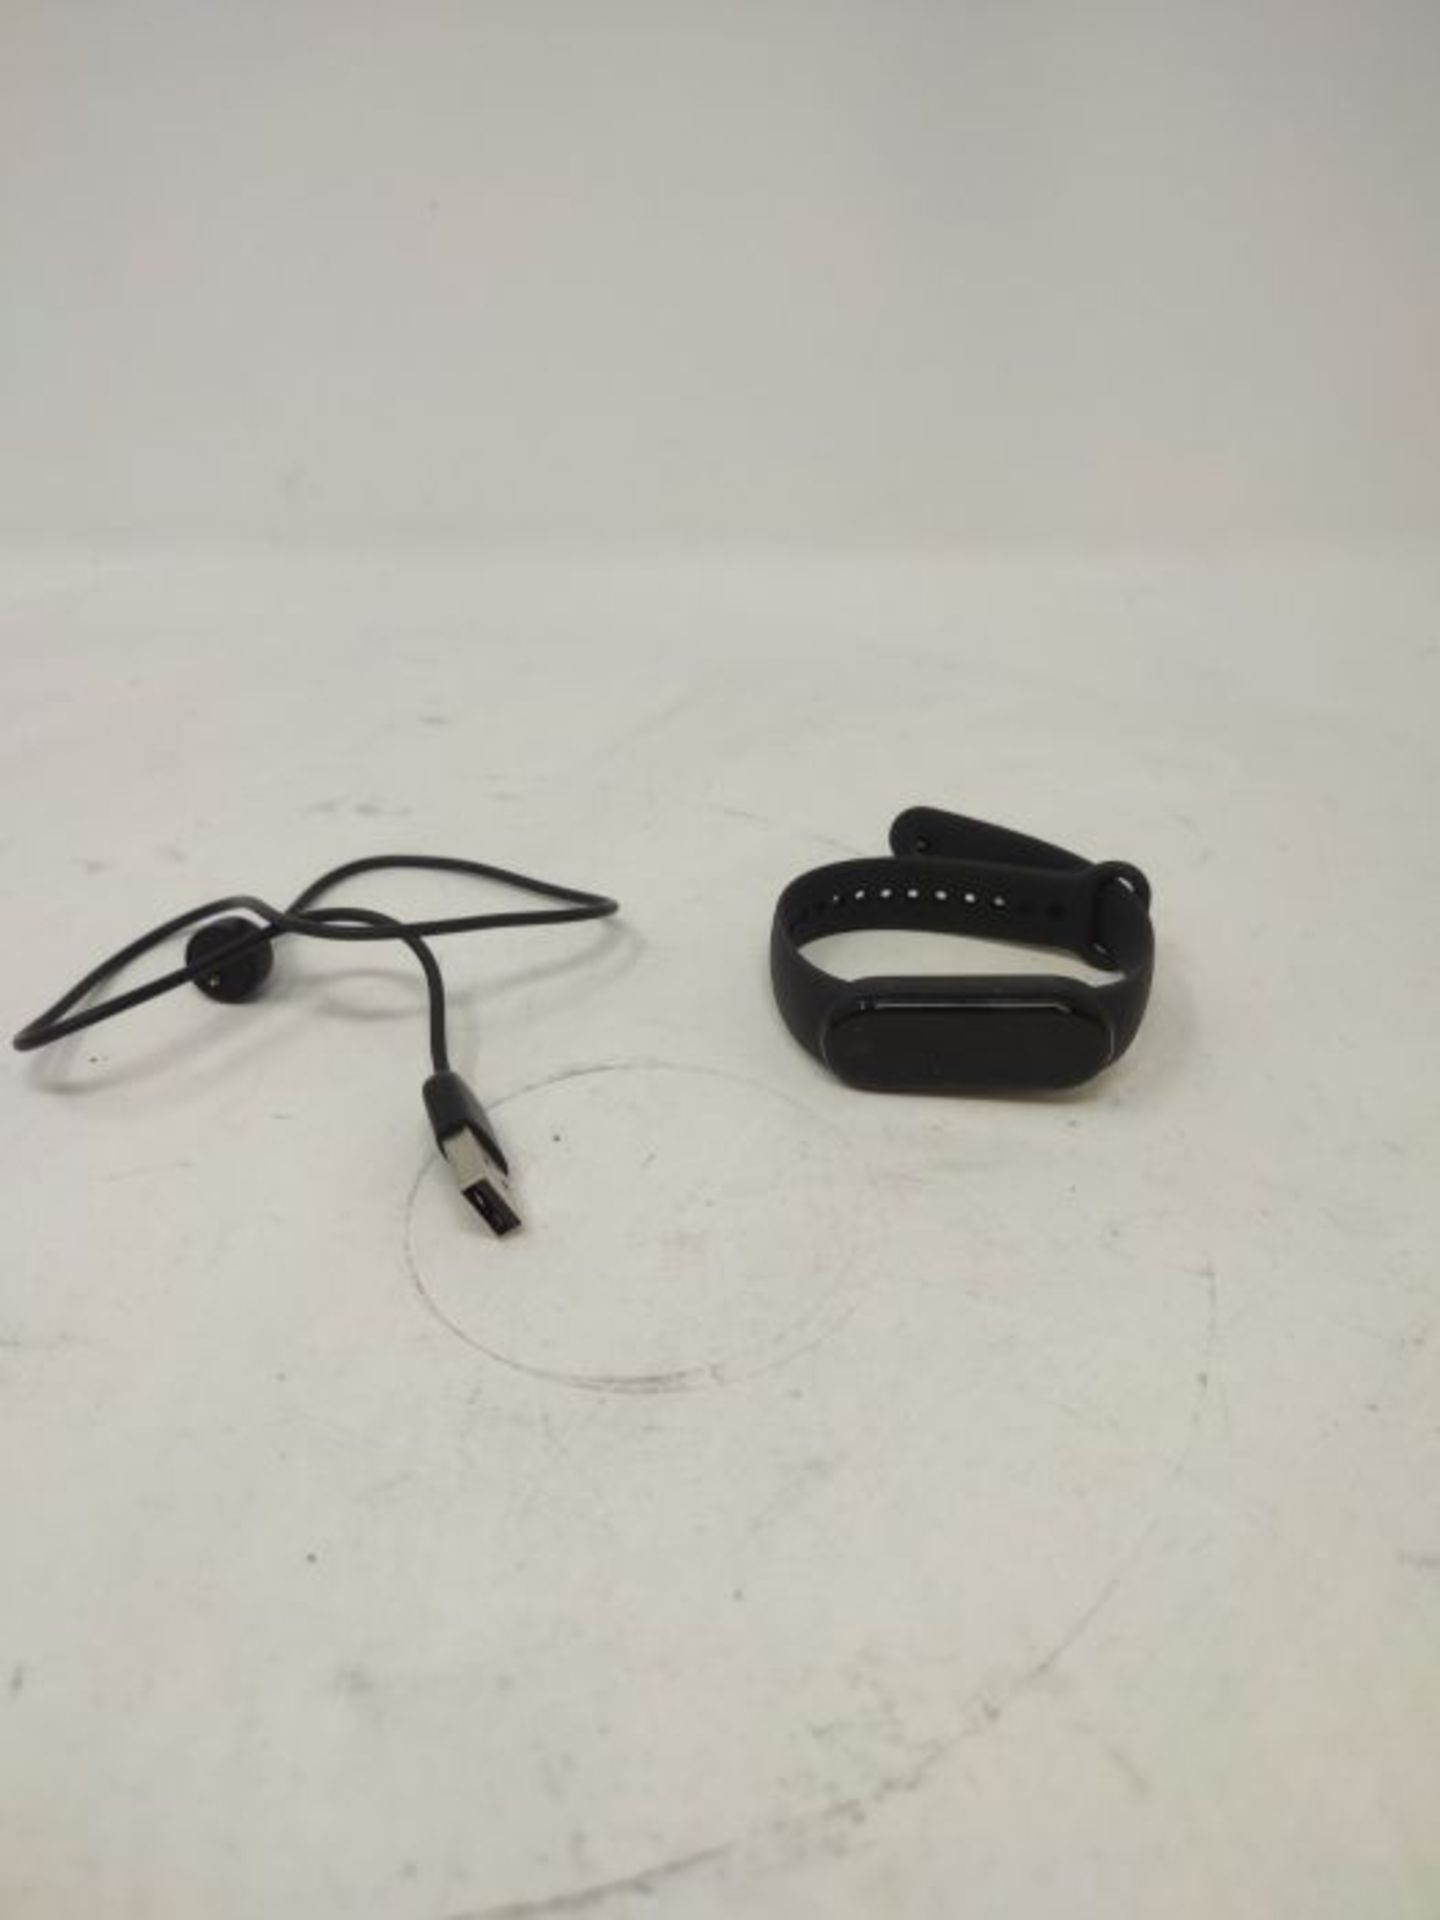 Xiaomi Band 5 Orologio Fitness Tracker Uomo Donna Cardiofrequenzimetro da Polso Contap - Image 3 of 3